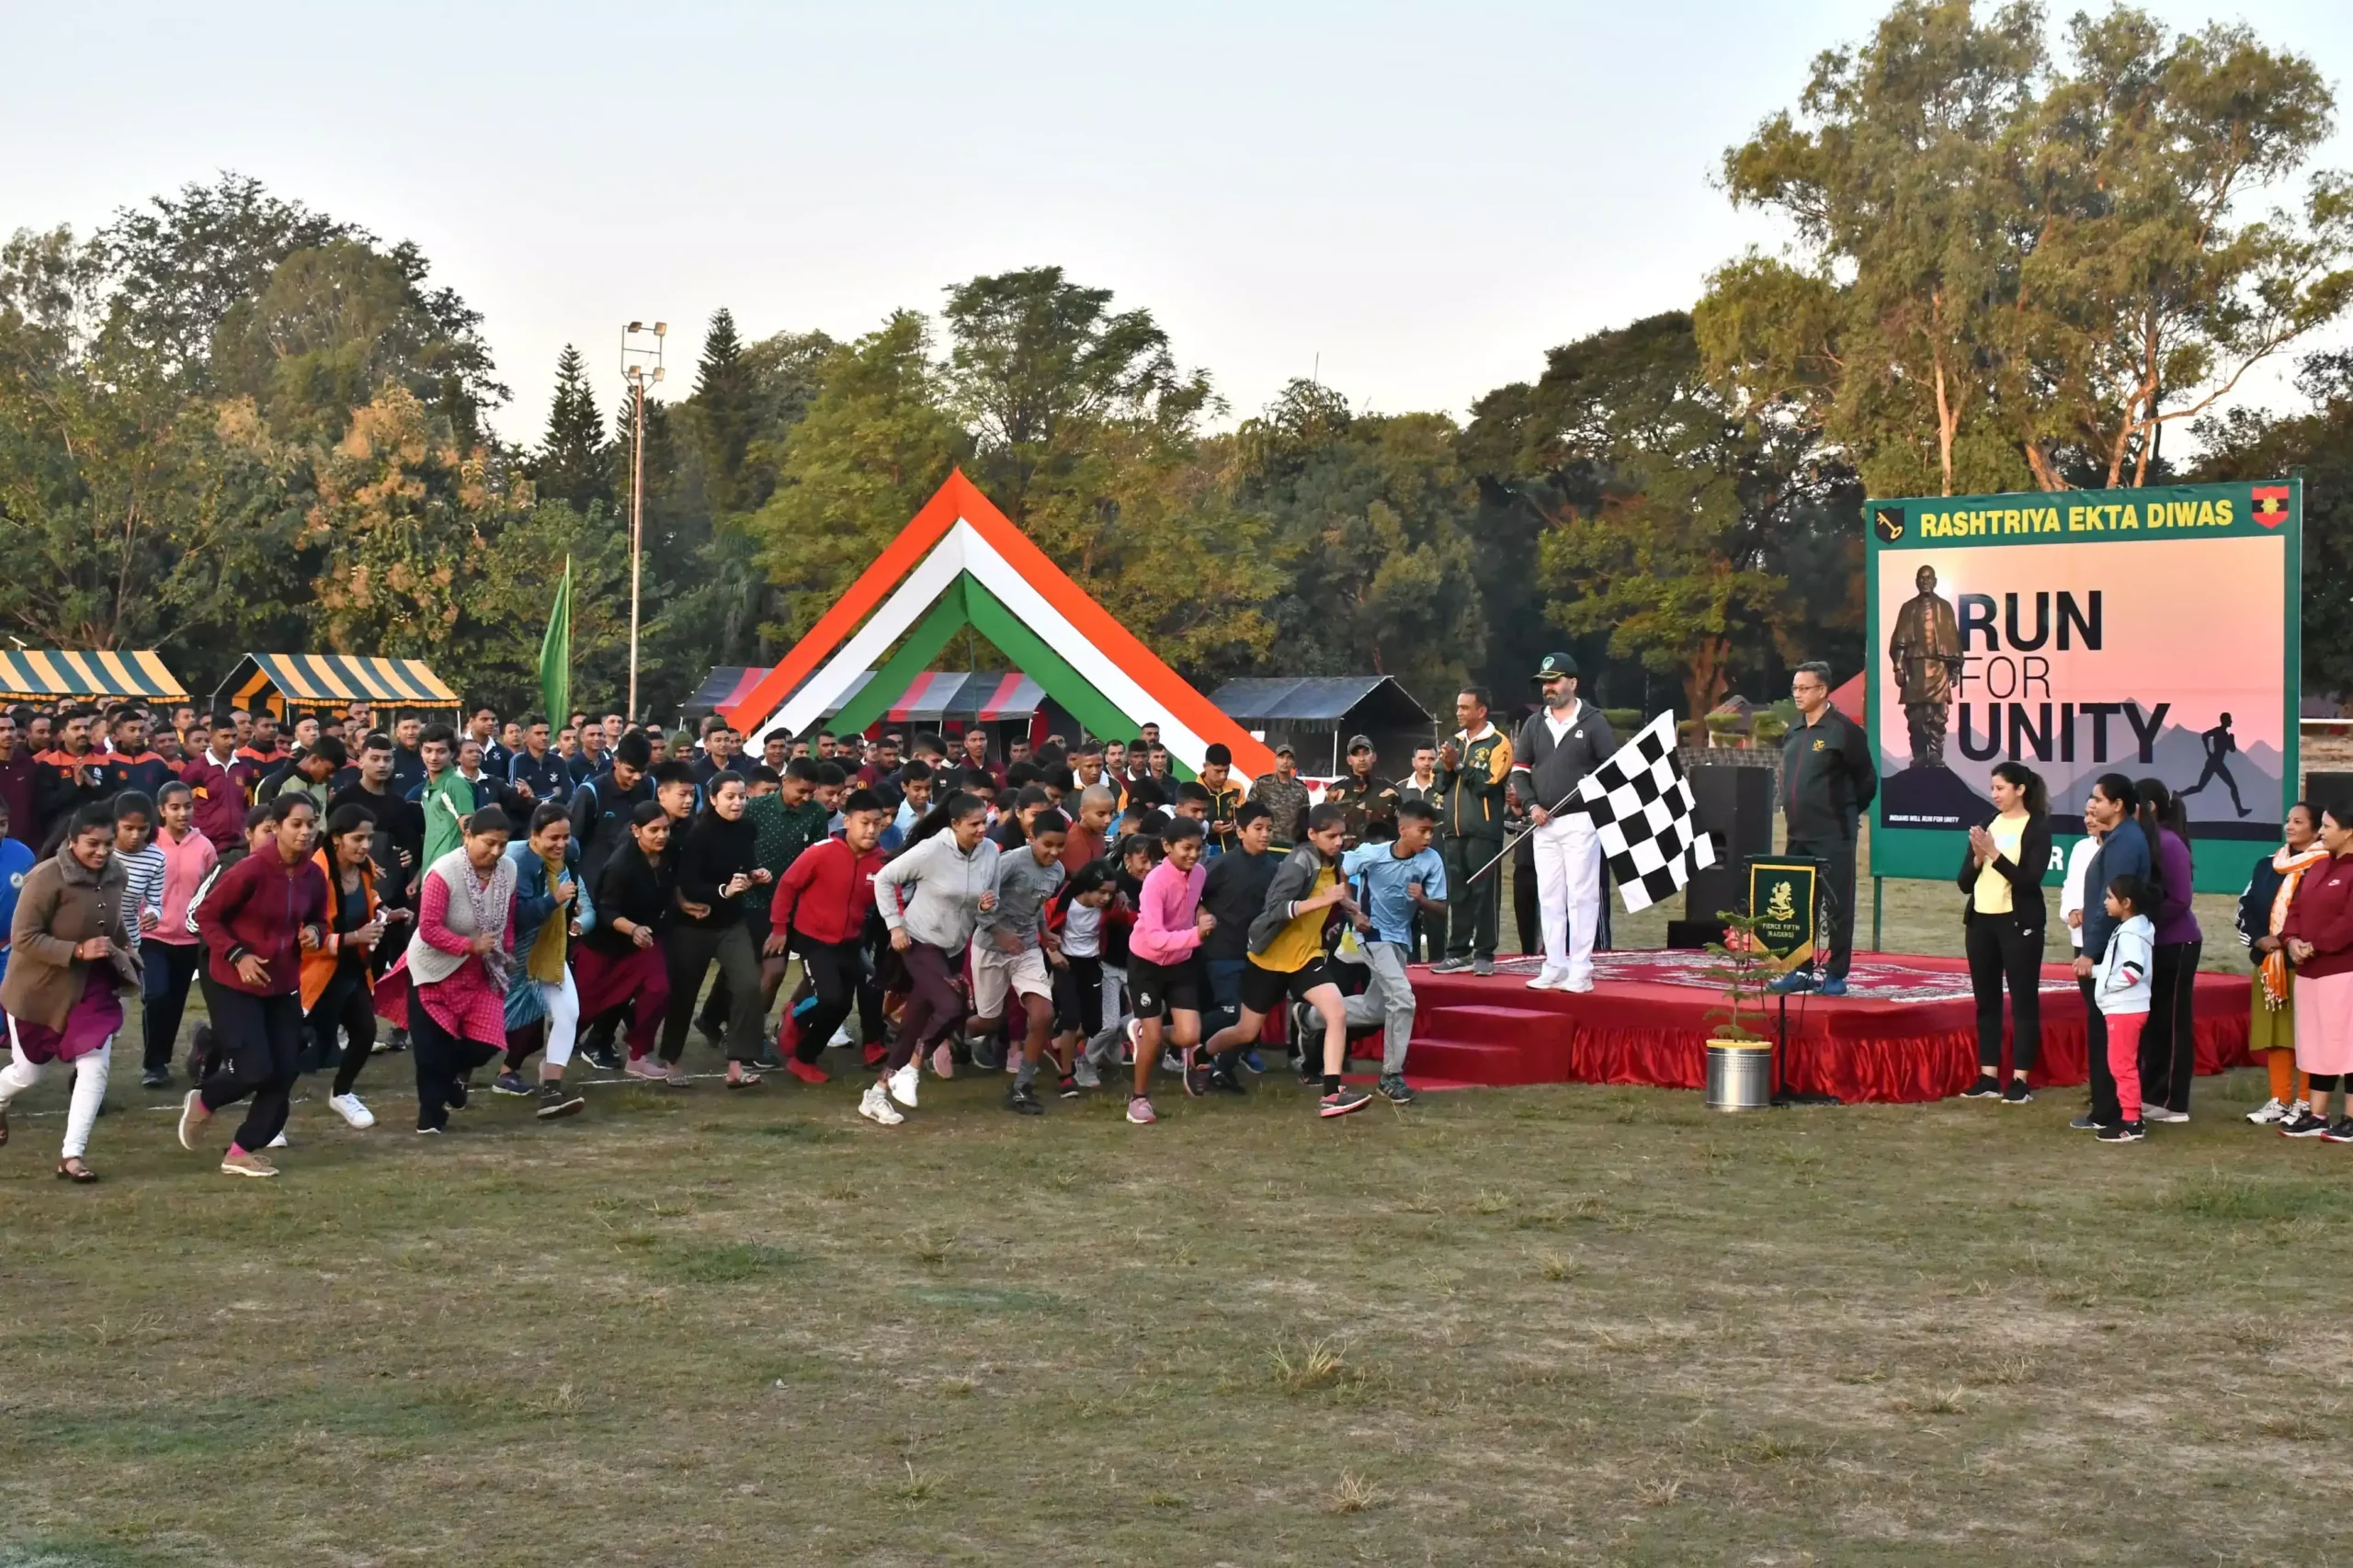  बीरपुर सैन्य स्टेशन पर ”रन फॉर यूनिटी” का आयोजन